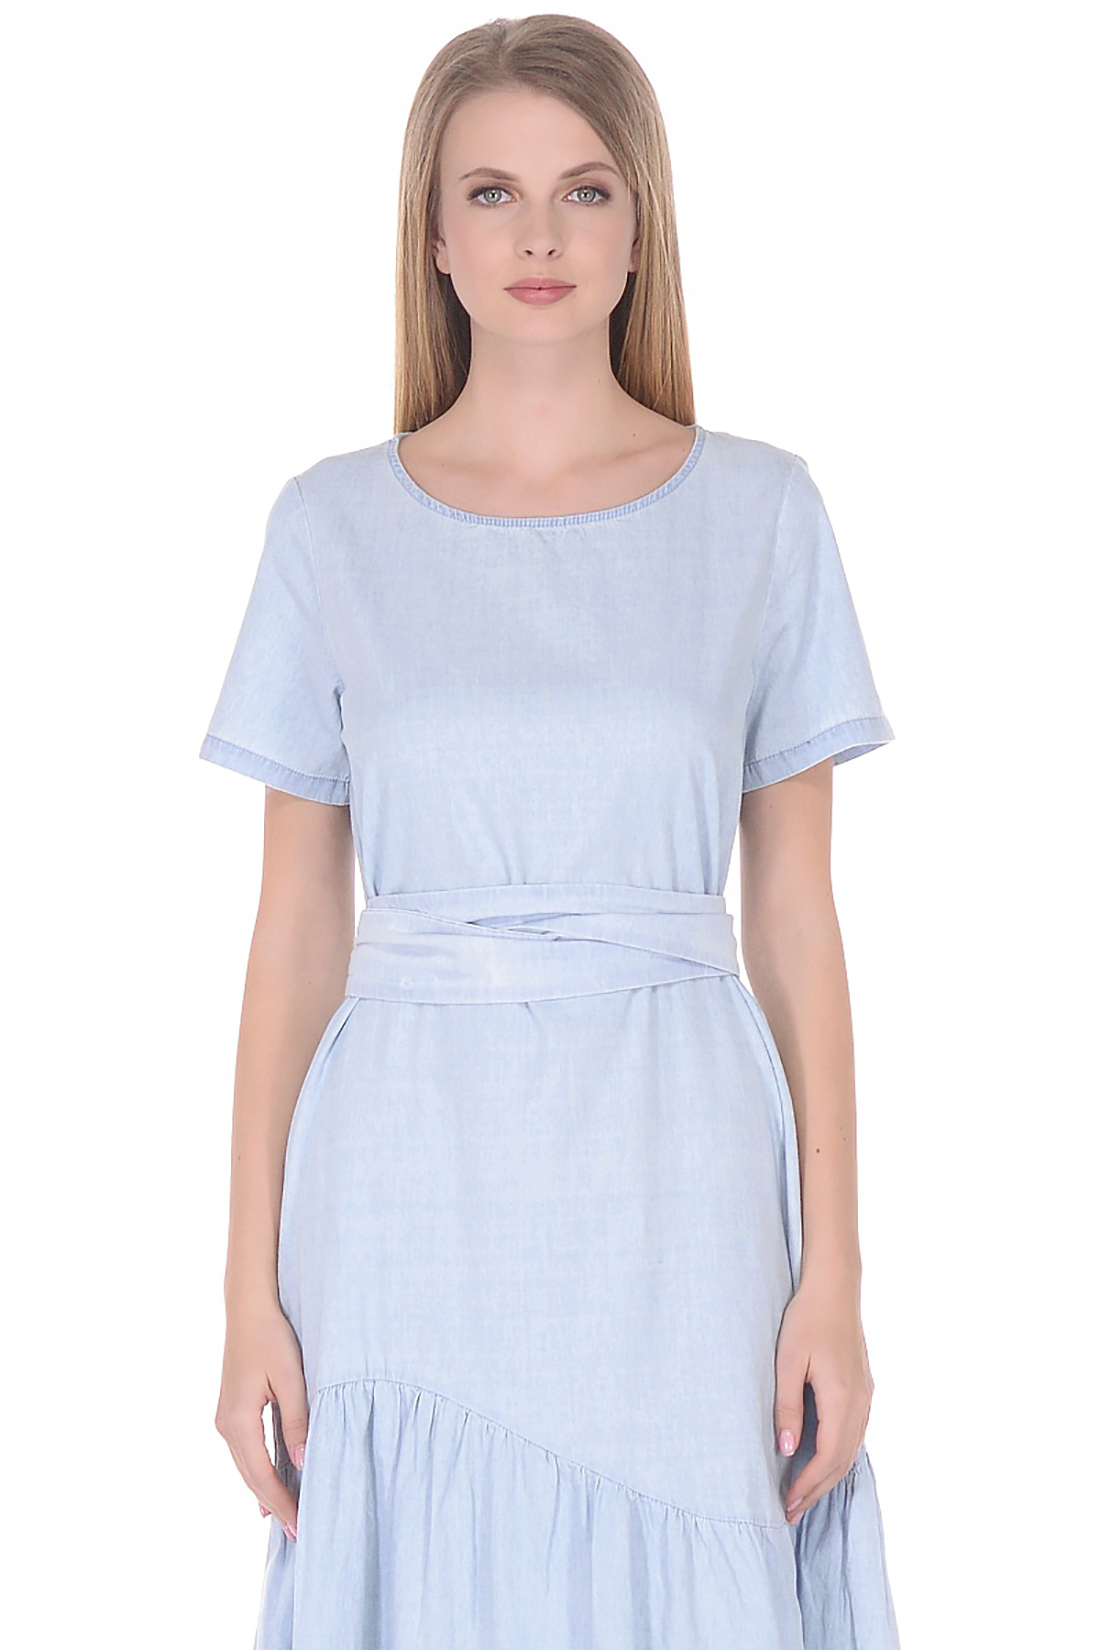 Платье с асимметричной оборкой (арт. baon B458079), размер 3XL, цвет light blue denim#голубой Платье с асимметричной оборкой (арт. baon B458079) - фото 3